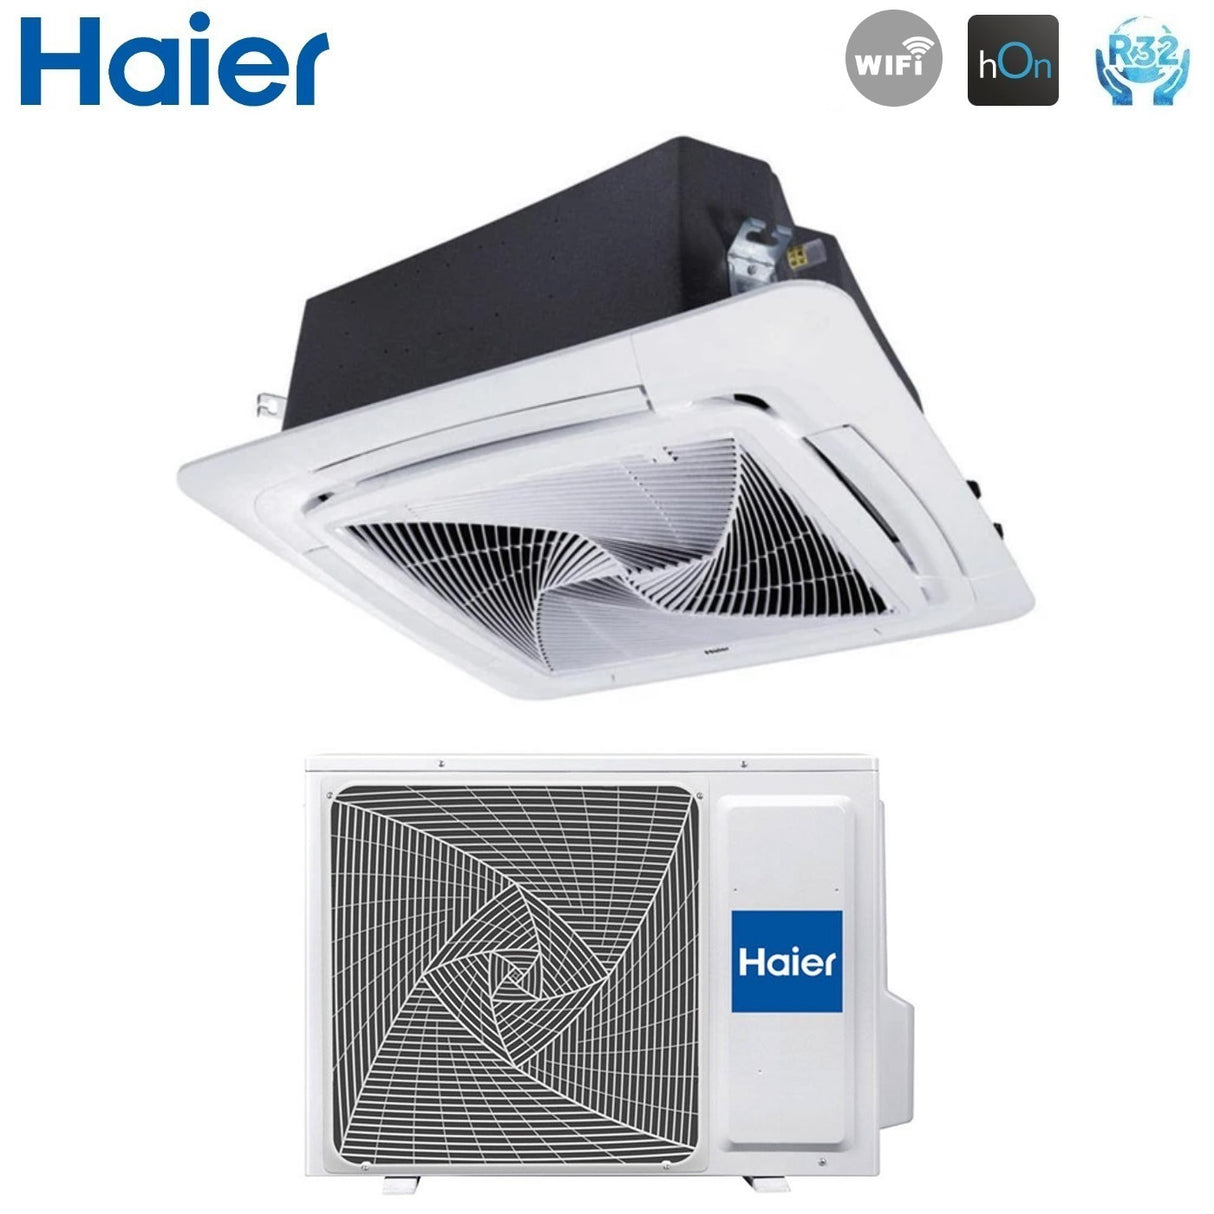 immagine-2-haier-climatizzatore-condizionatore-haier-cassetta-90x90-round-flow-24000-btu-ab71s2sg1fa-r-32-wi-fi-optional-con-pannello-no-sensor-incluso